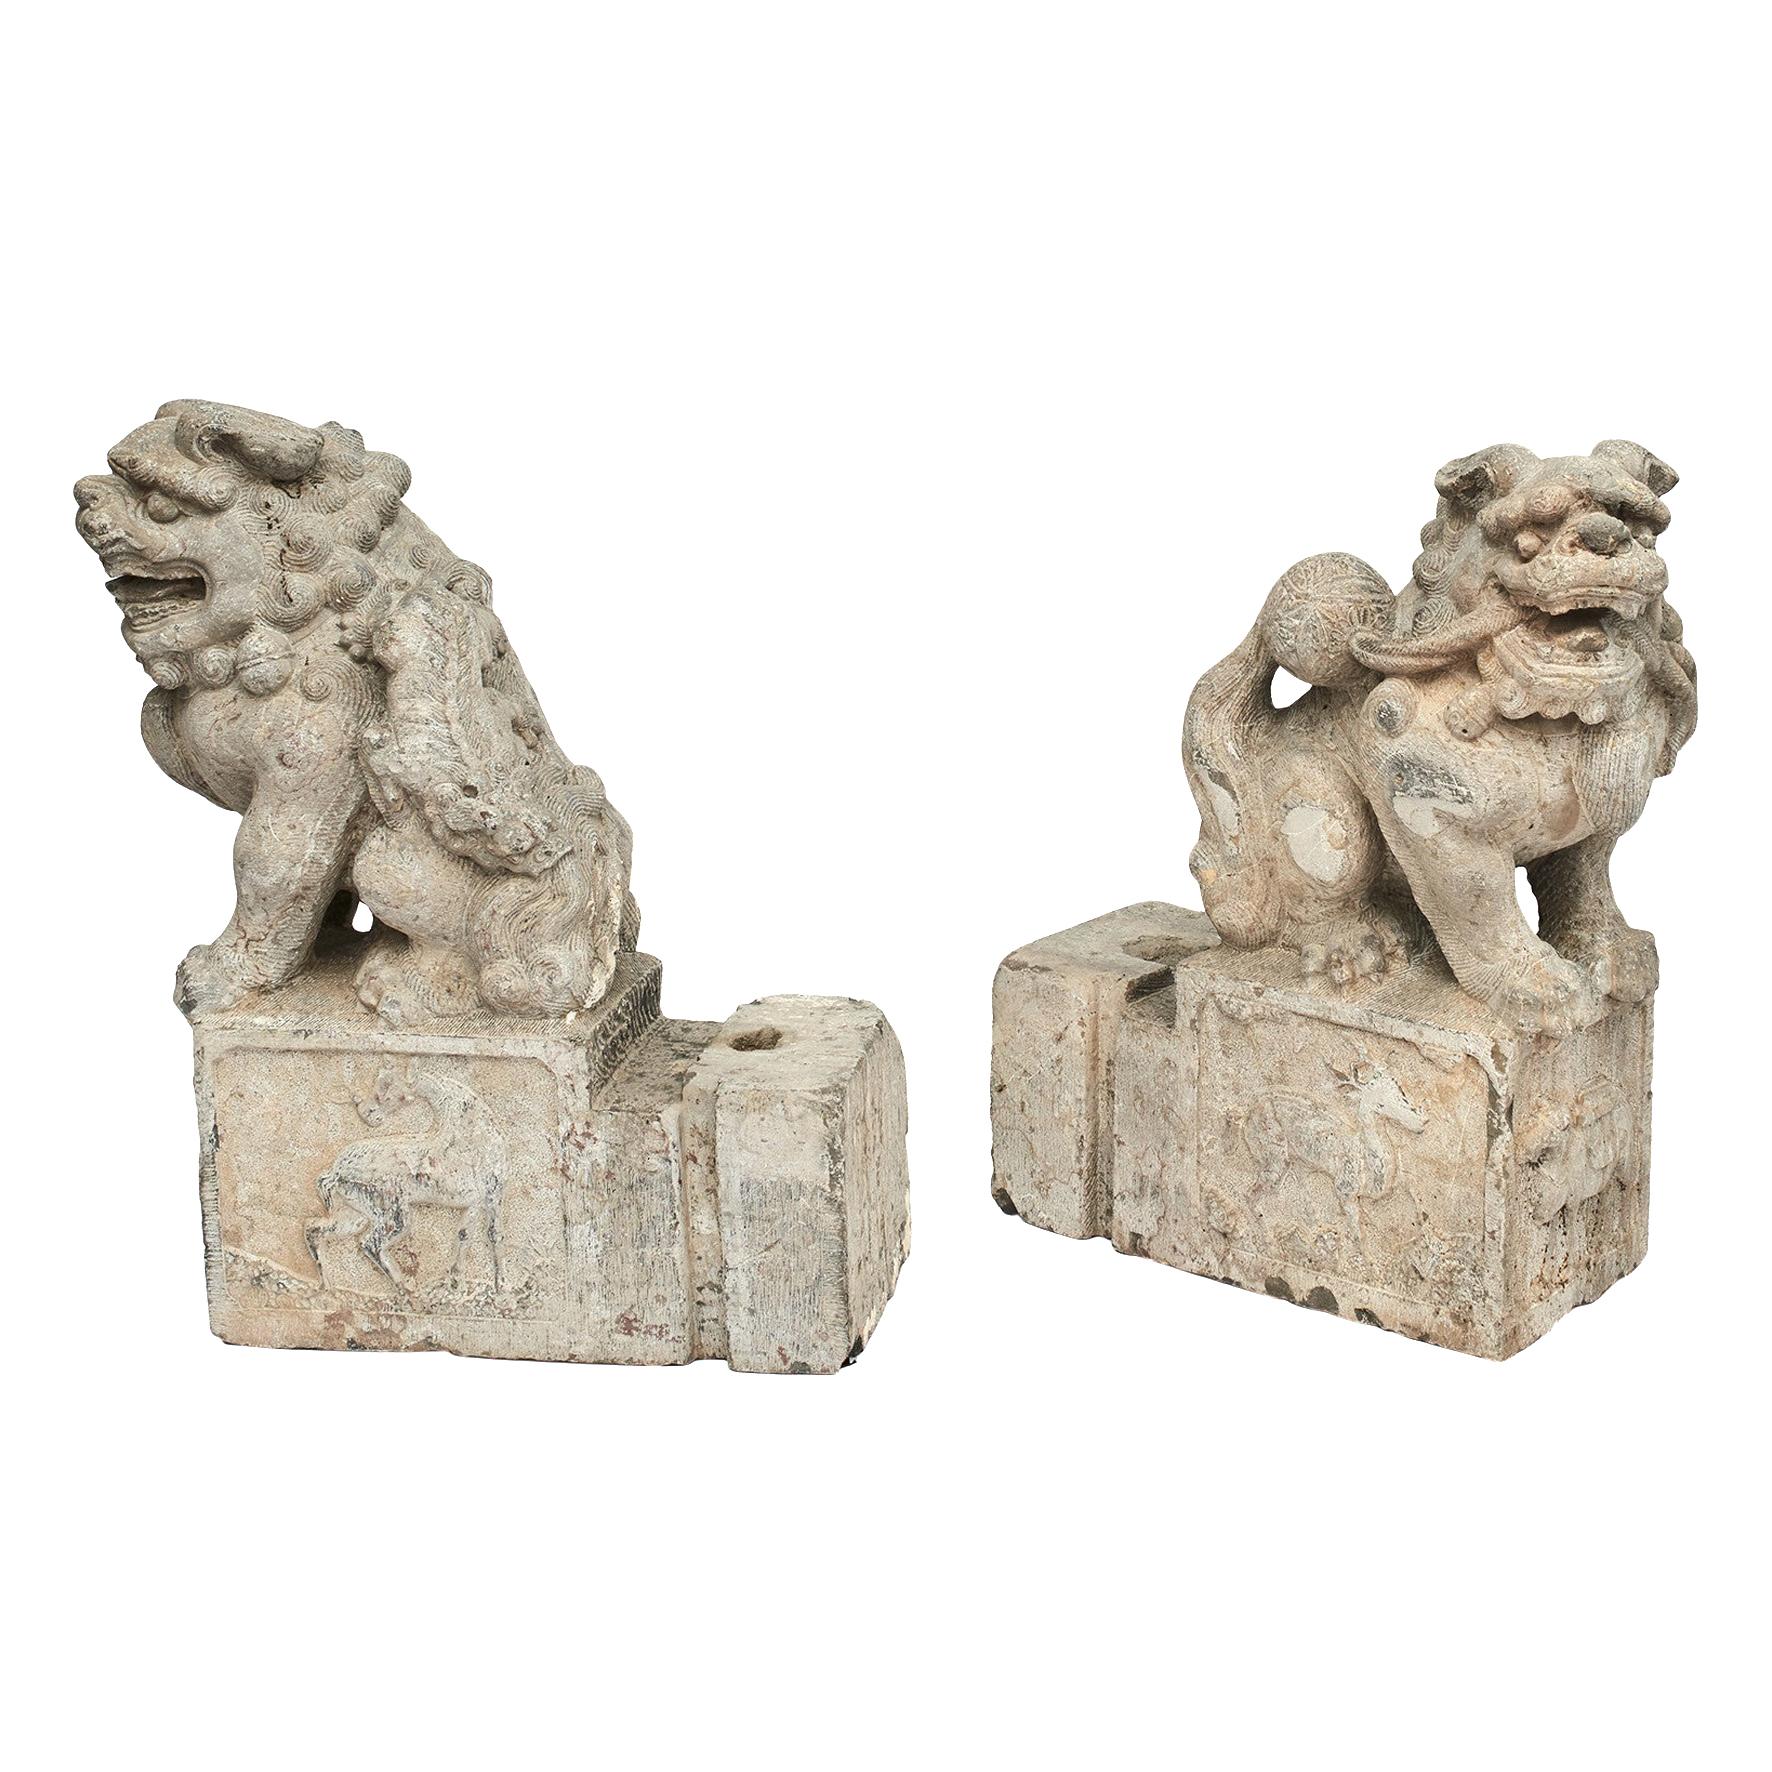 Paire d'anciens lions gardiens en pierre sculptée de la fin de la dynastie Ming sur la route de la soie